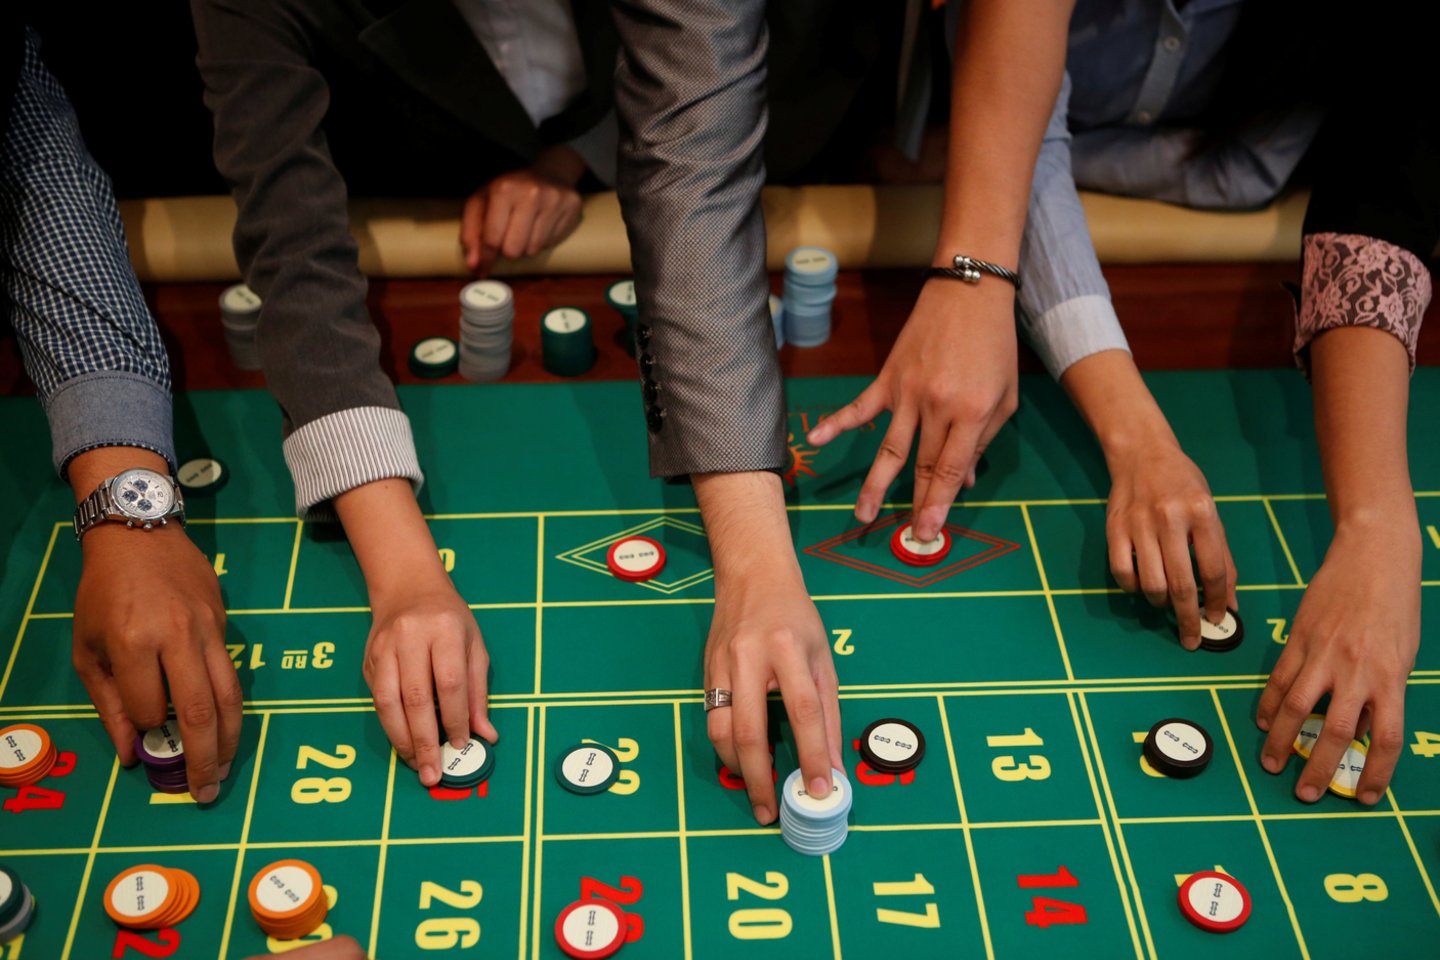 Prašymą neleisti lošti pateikęs, tačiau į kazino vis tiek įleistas vyras iš bendrovės prisiteisė per dvejus metus praloštus 6,5 tūkst. eurų.<br>Reuters/Scanpix nuotr.